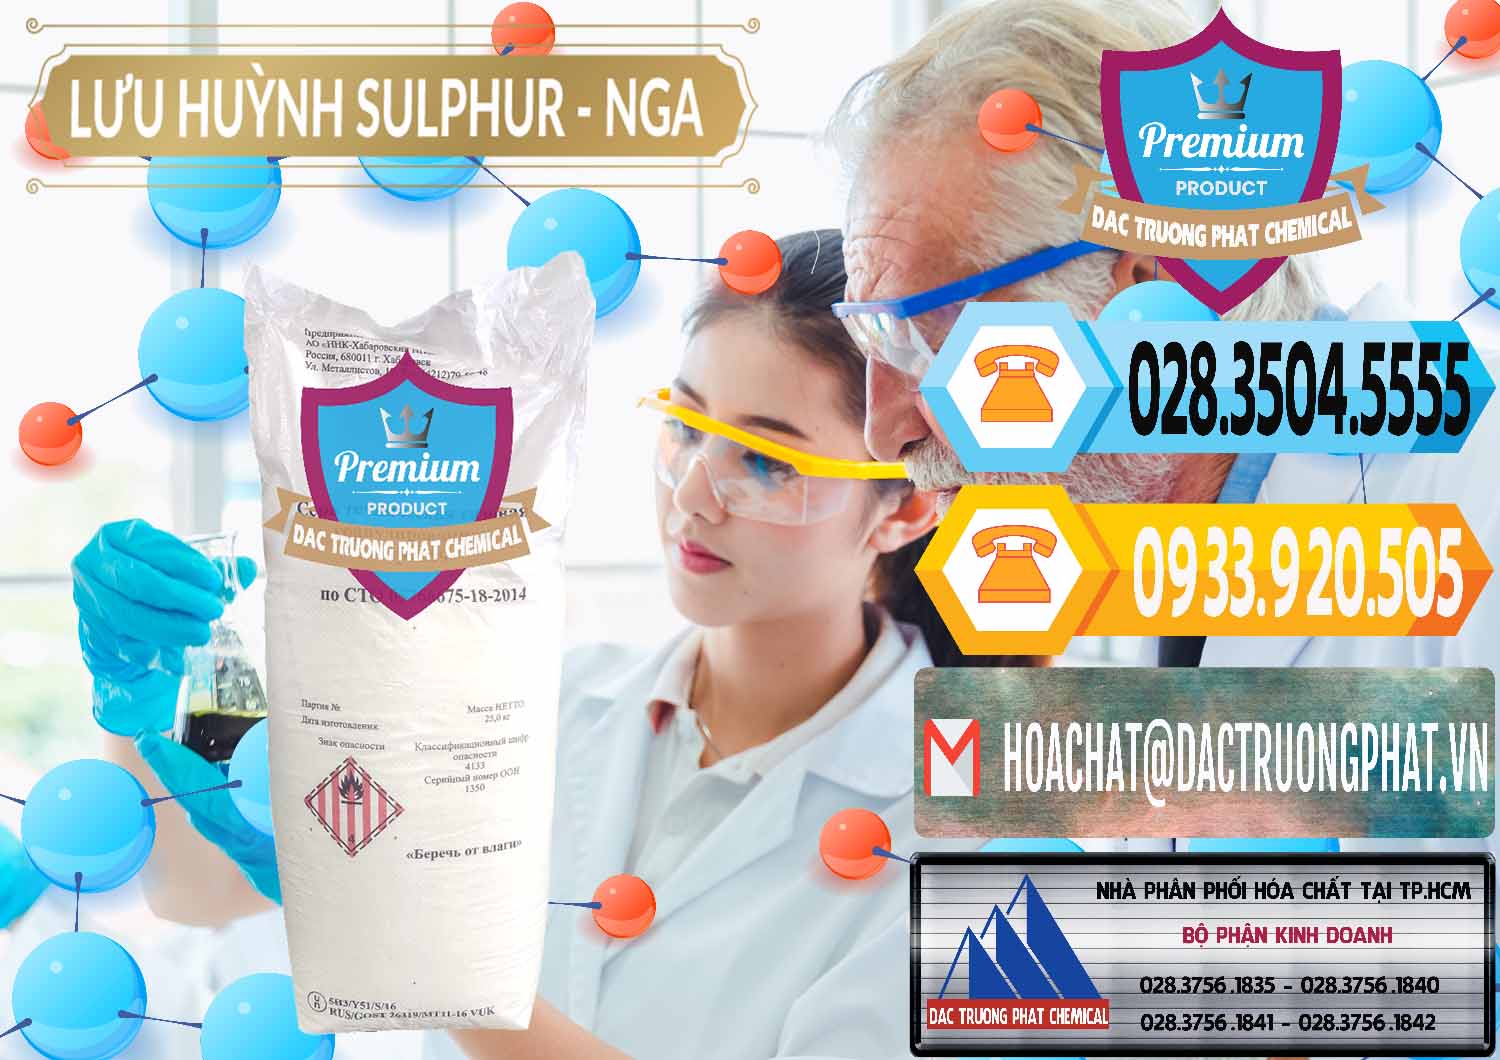 Công ty cung cấp _ bán Lưu huỳnh Hạt - Sulfur Nga Russia - 0200 - Nơi phân phối _ cung ứng hóa chất tại TP.HCM - hoachattayrua.net